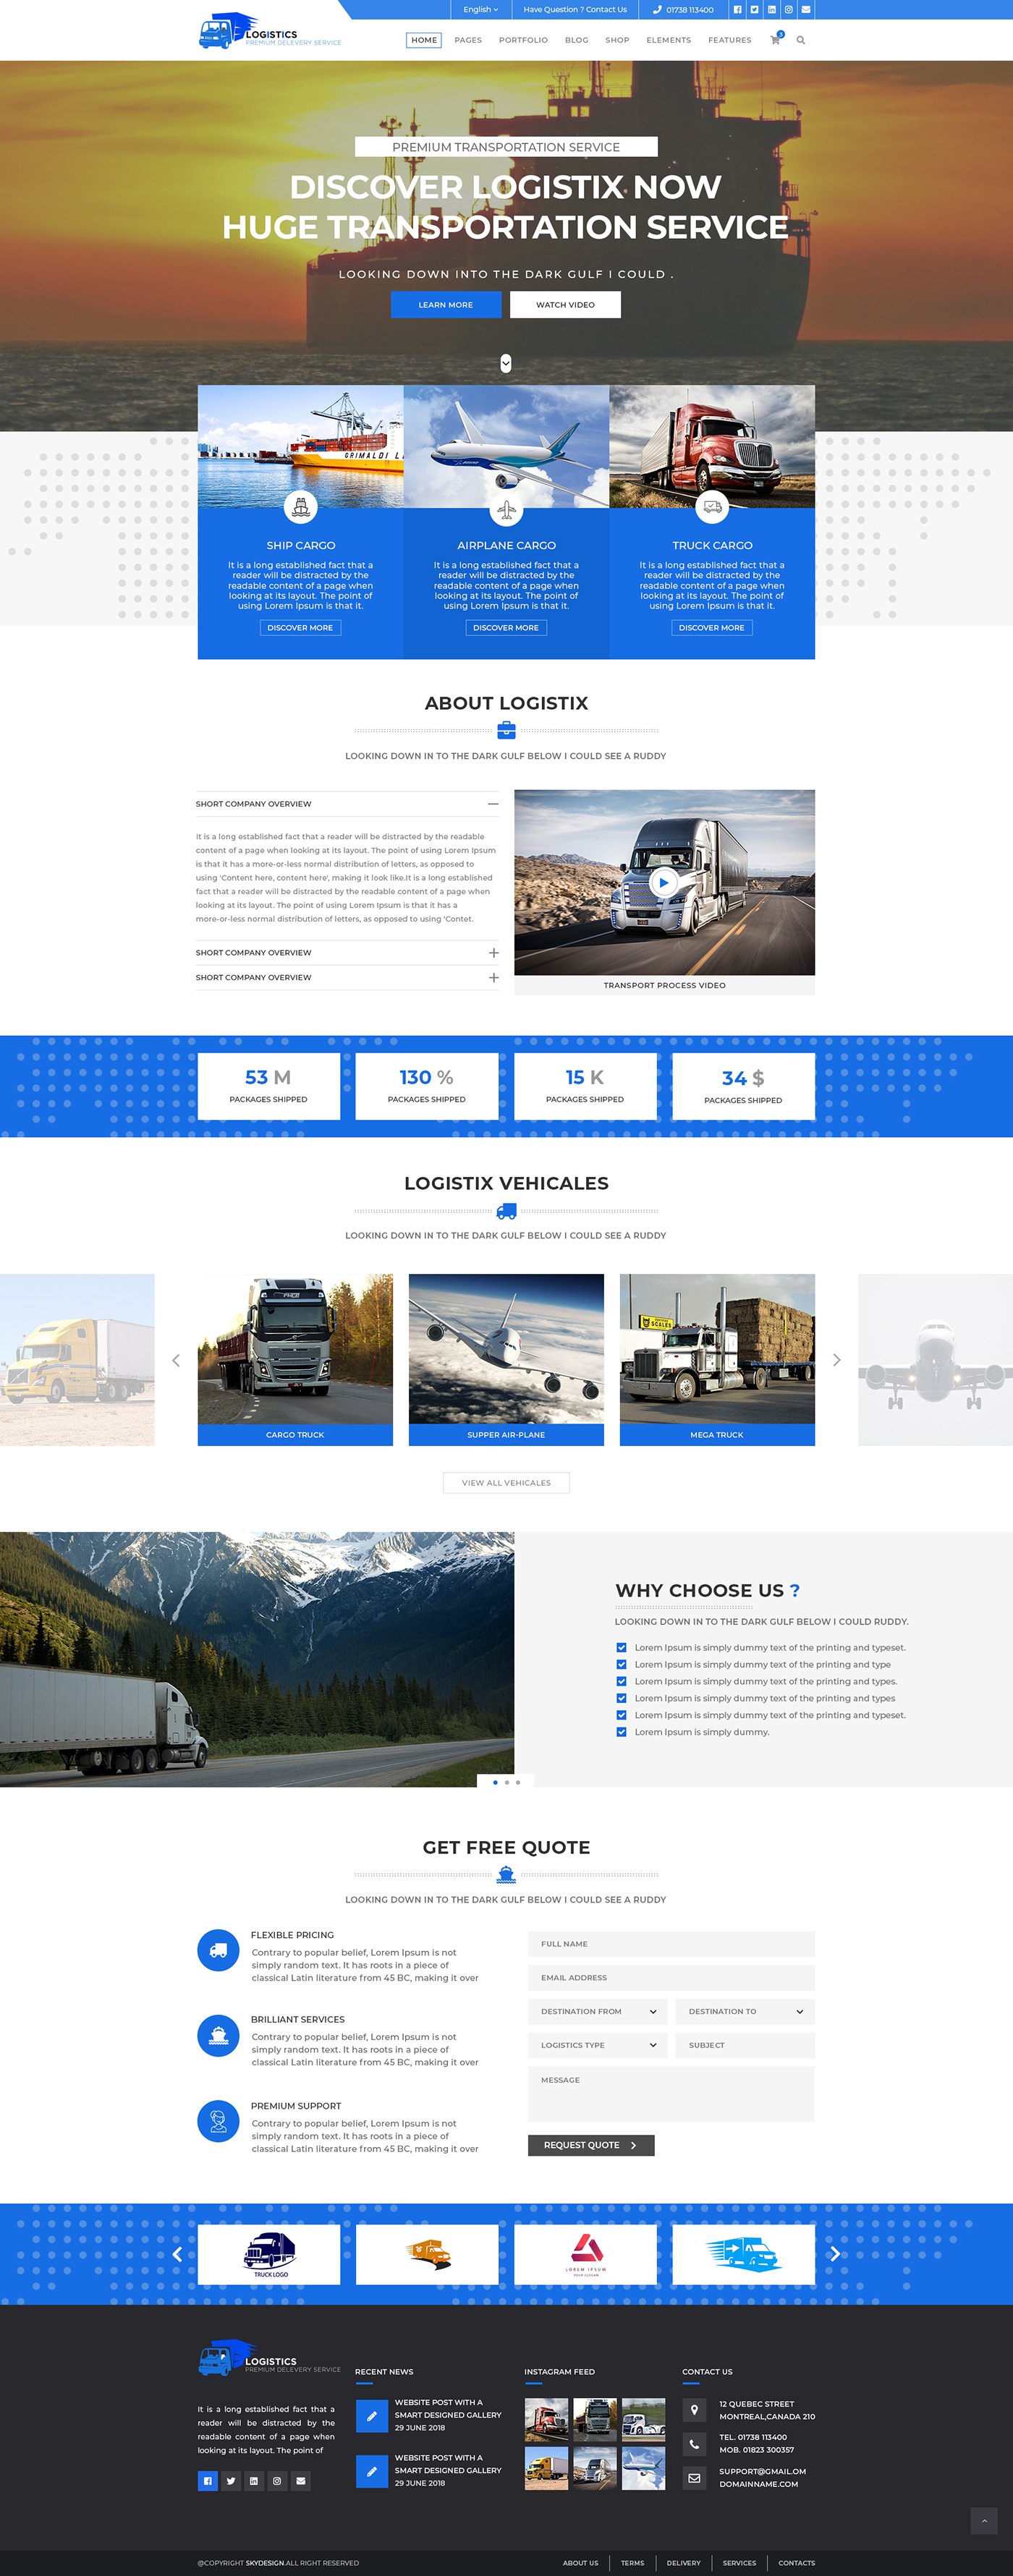 Web UI Web UI Design Web UI Template Logistics logistics web design logistics web ui logistics ui template Transport